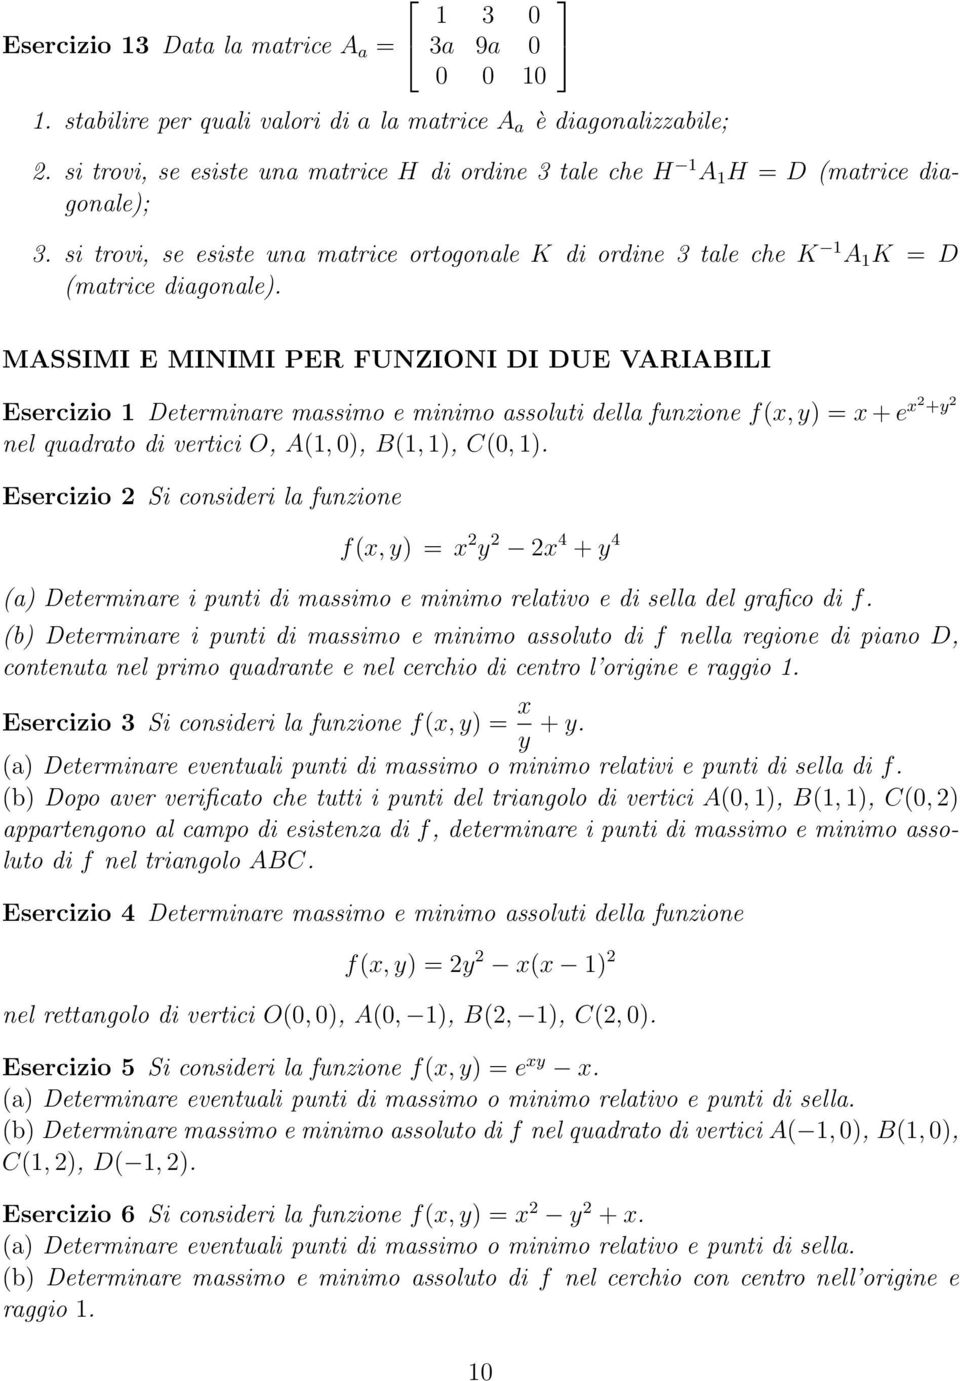 MASSIMI E MINIMI PER FUNZIONI DI DUE VARIABILI Esercizio 1 Determinare massimo e minimo assoluti della funzione f(x, y) = x + e x2 +y 2 nel quadrato di vertici O, A(1, 0), B(1, 1), C(0, 1).